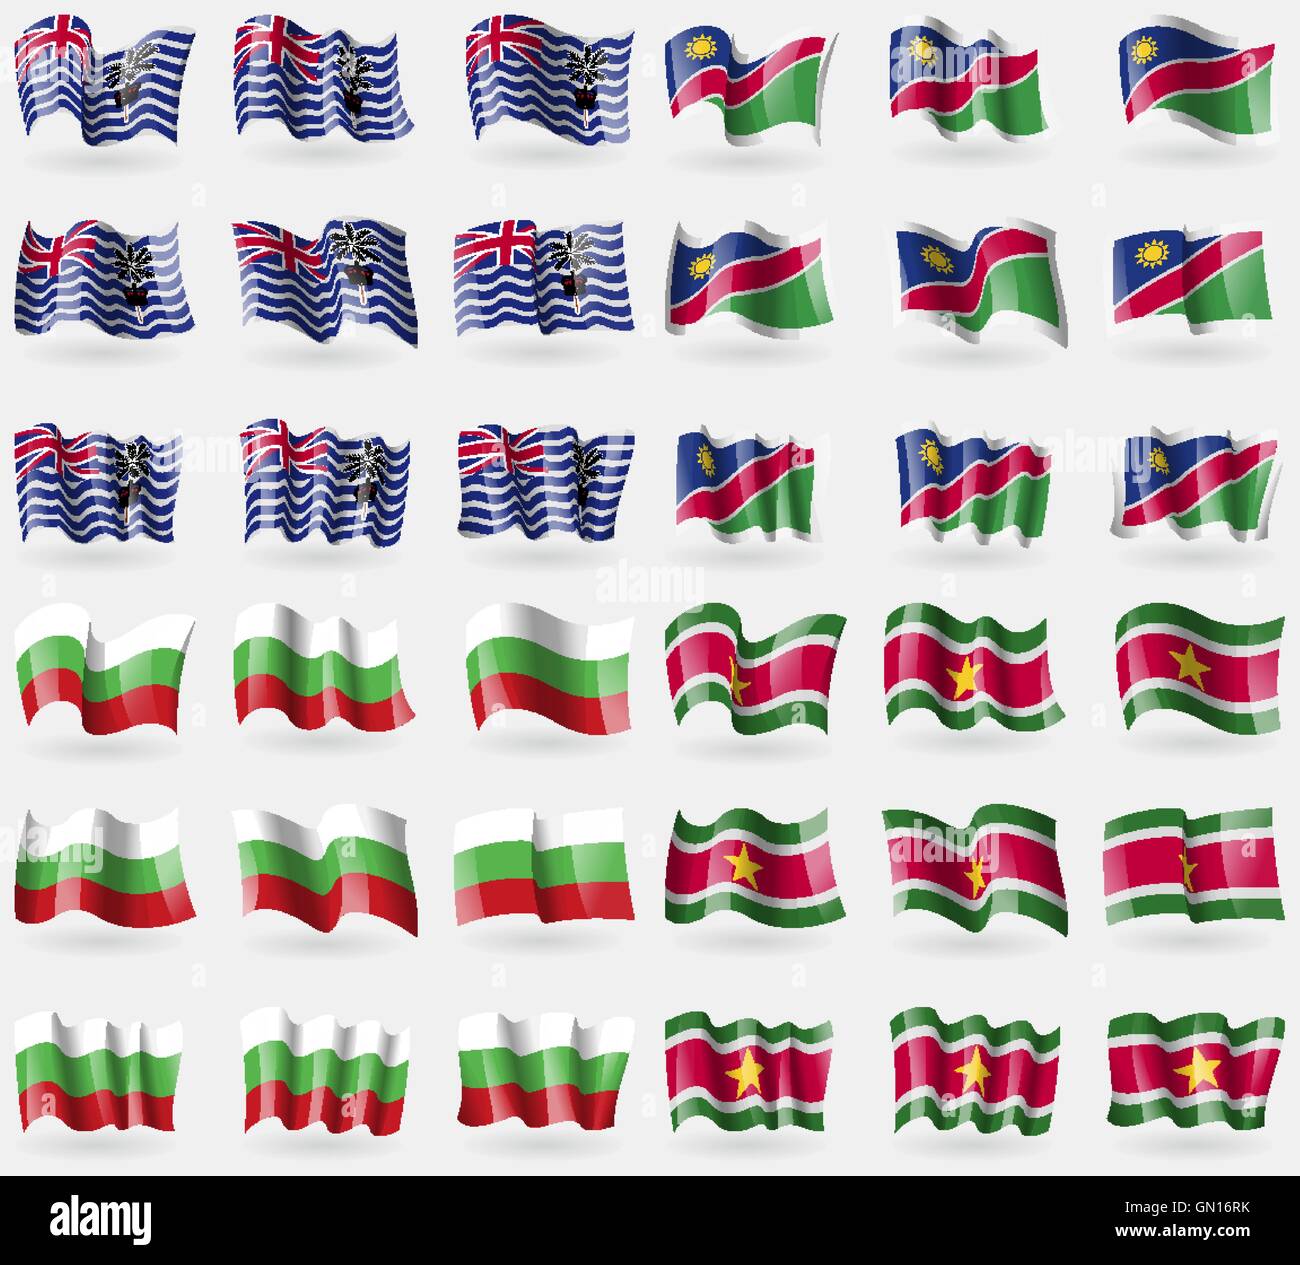 Territoire britannique de l'Océan Indien, la Namibie, la Bulgarie, l'Suridame. Ensemble de 36 drapeaux des pays du monde. Vector Illustration de Vecteur